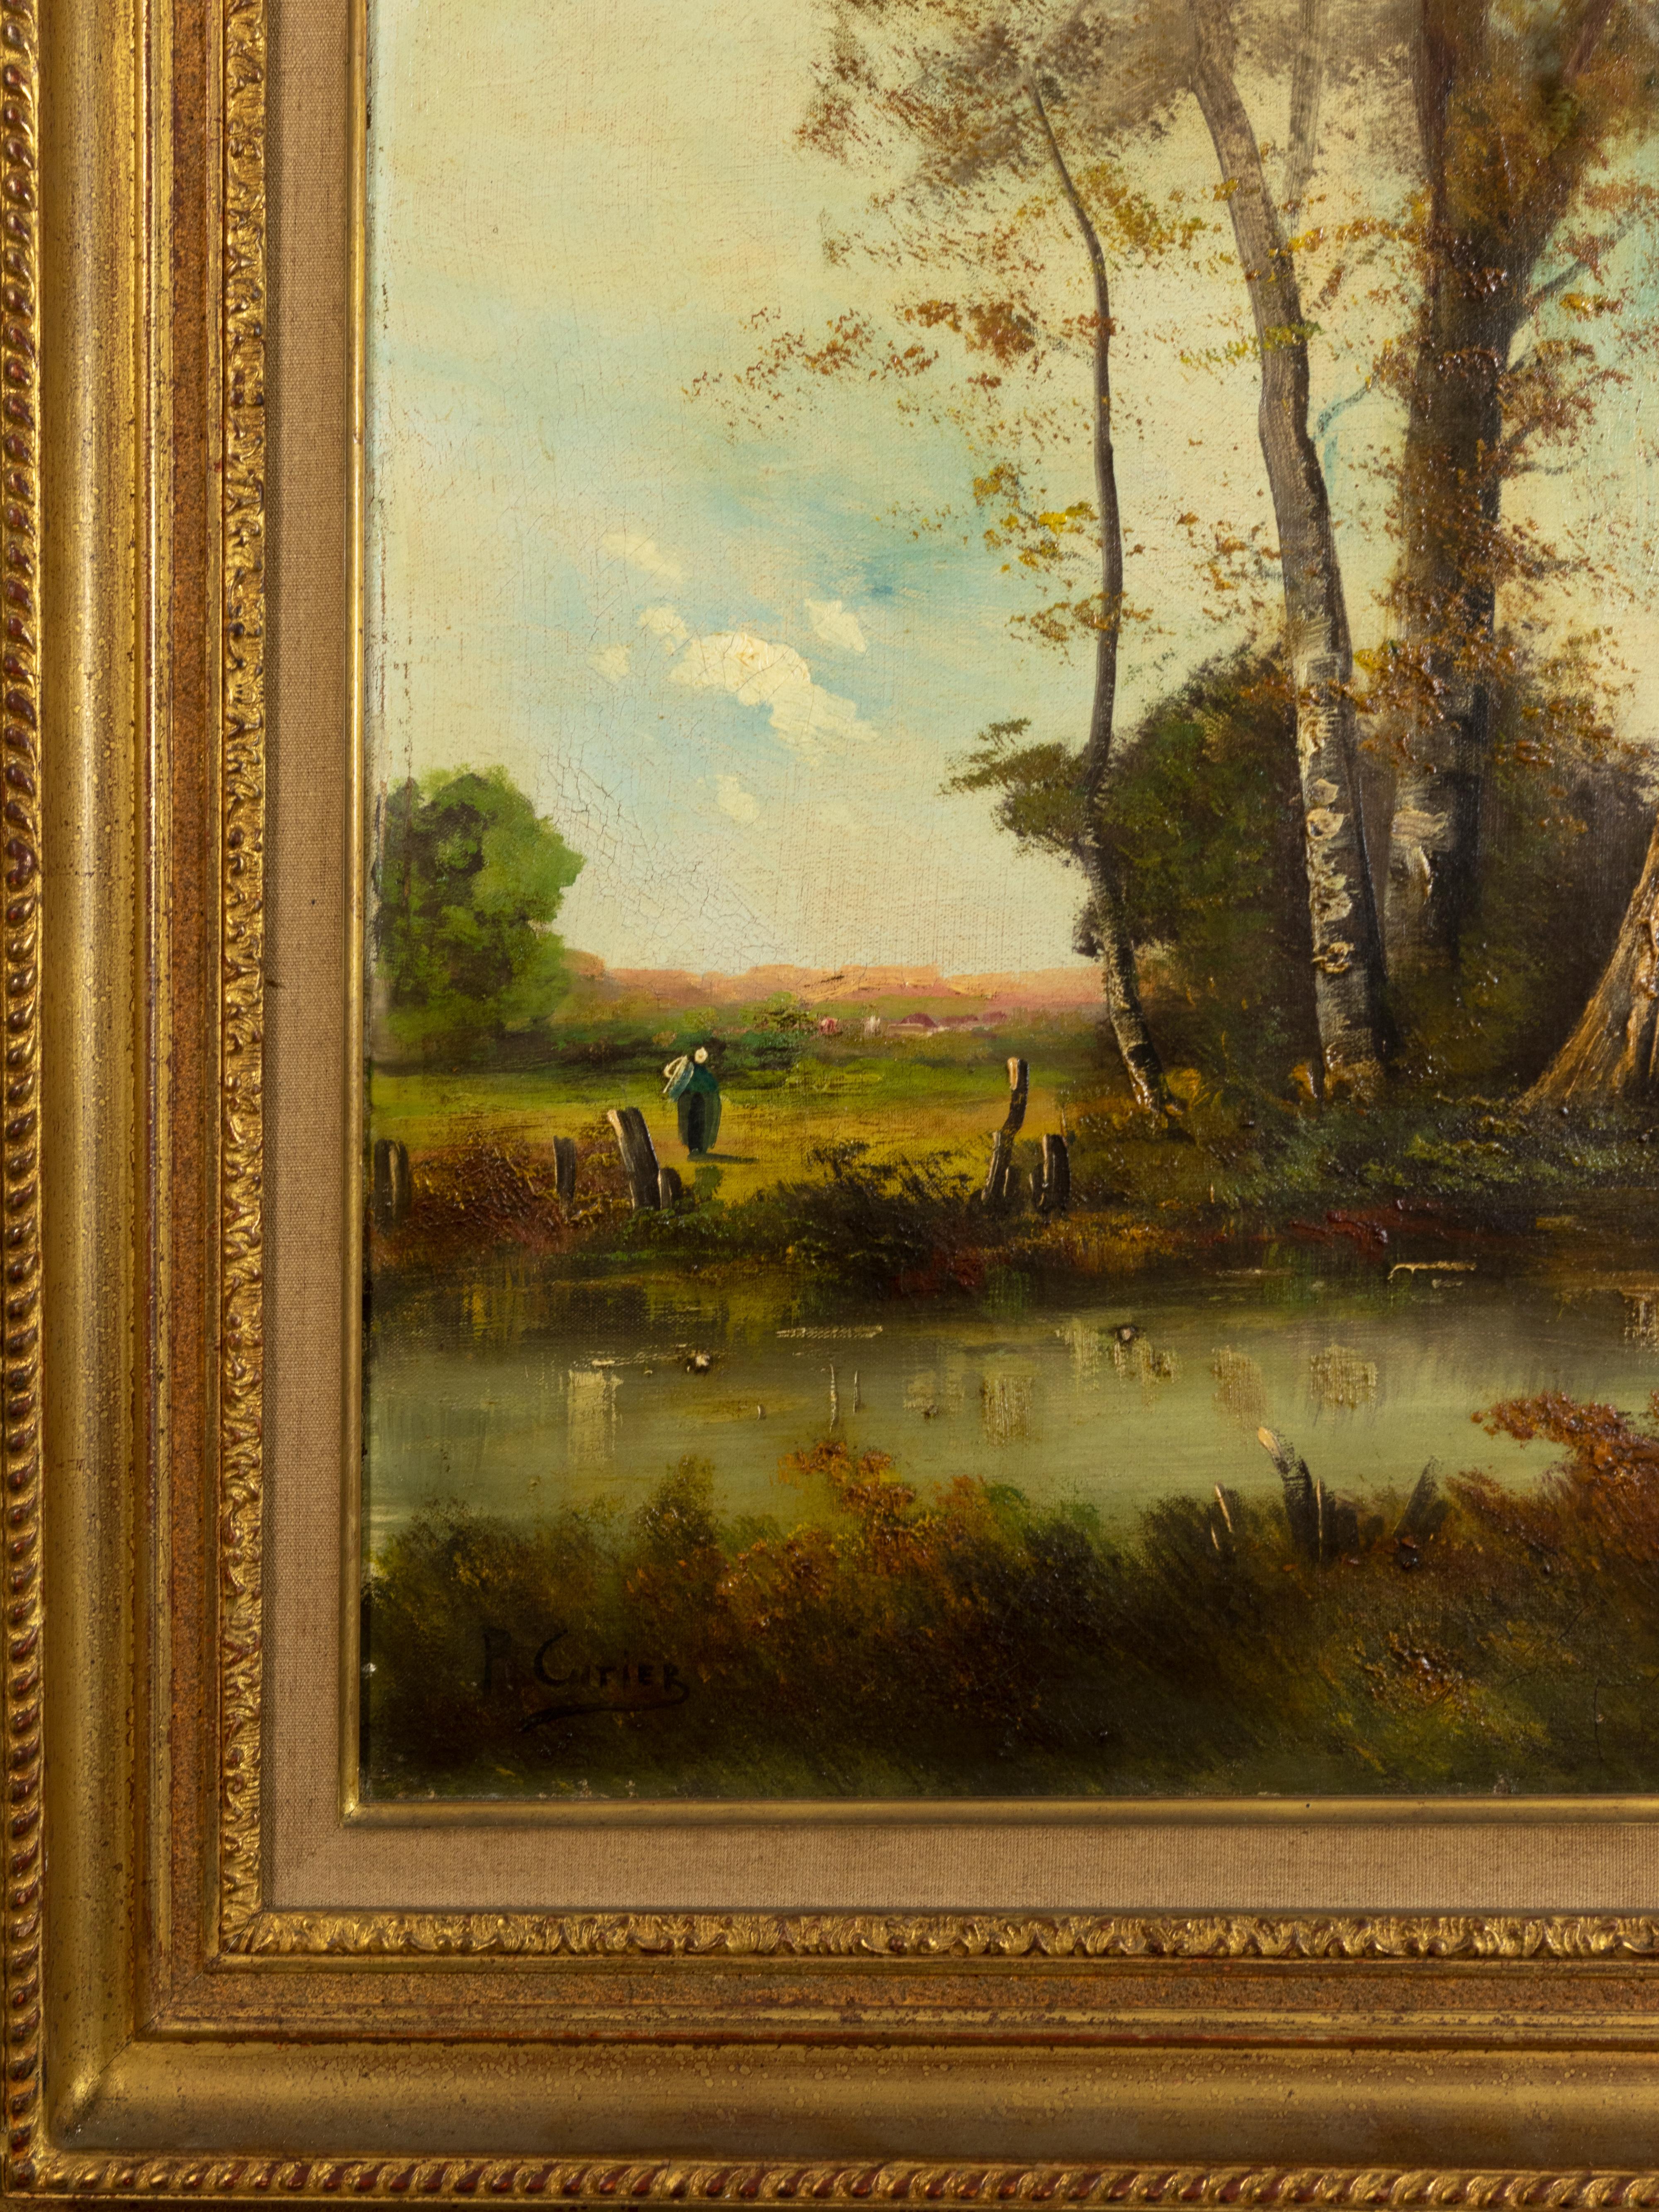 Ein französisches Gemälde der bukolischen Landschaft mit Fluss und Mann in der Ferne unterzeichnet 